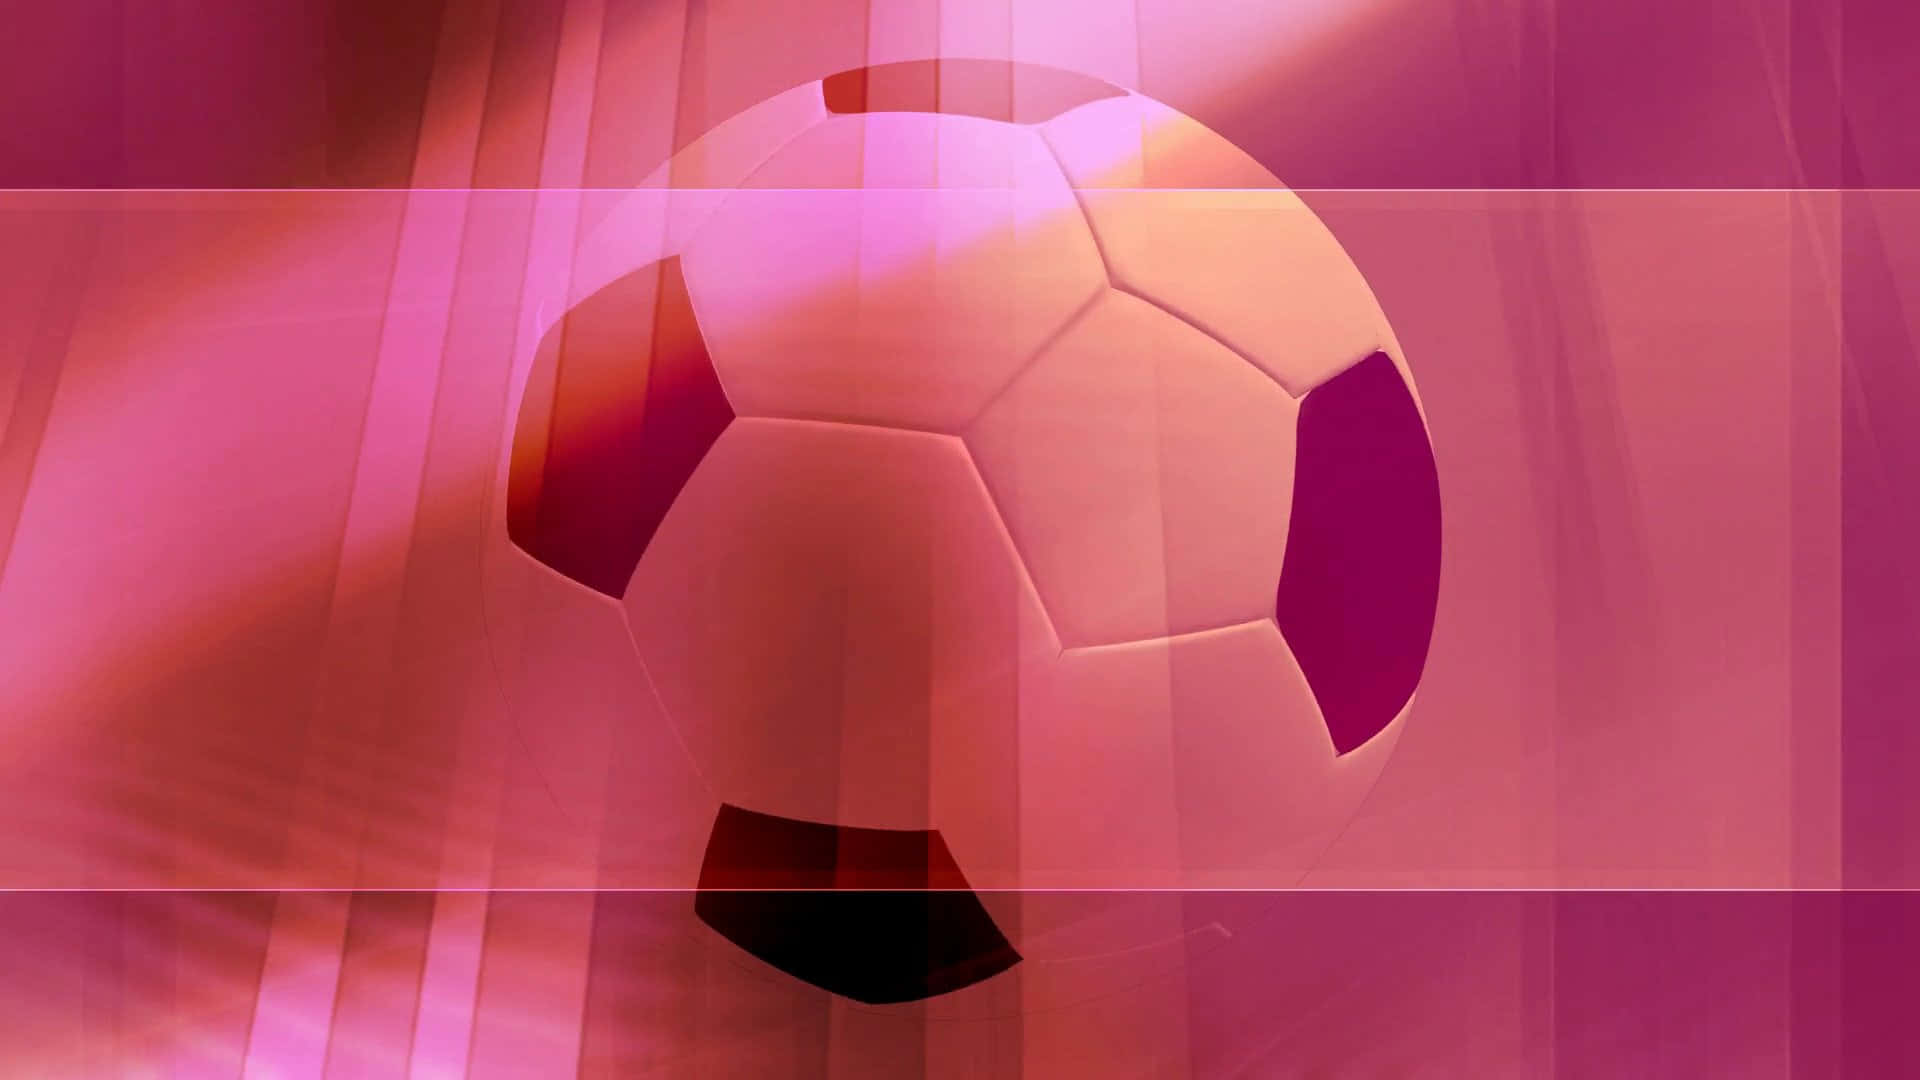 Elegantebalón De Fútbol Rosa En Un Fondo Vibrante. Fondo de pantalla